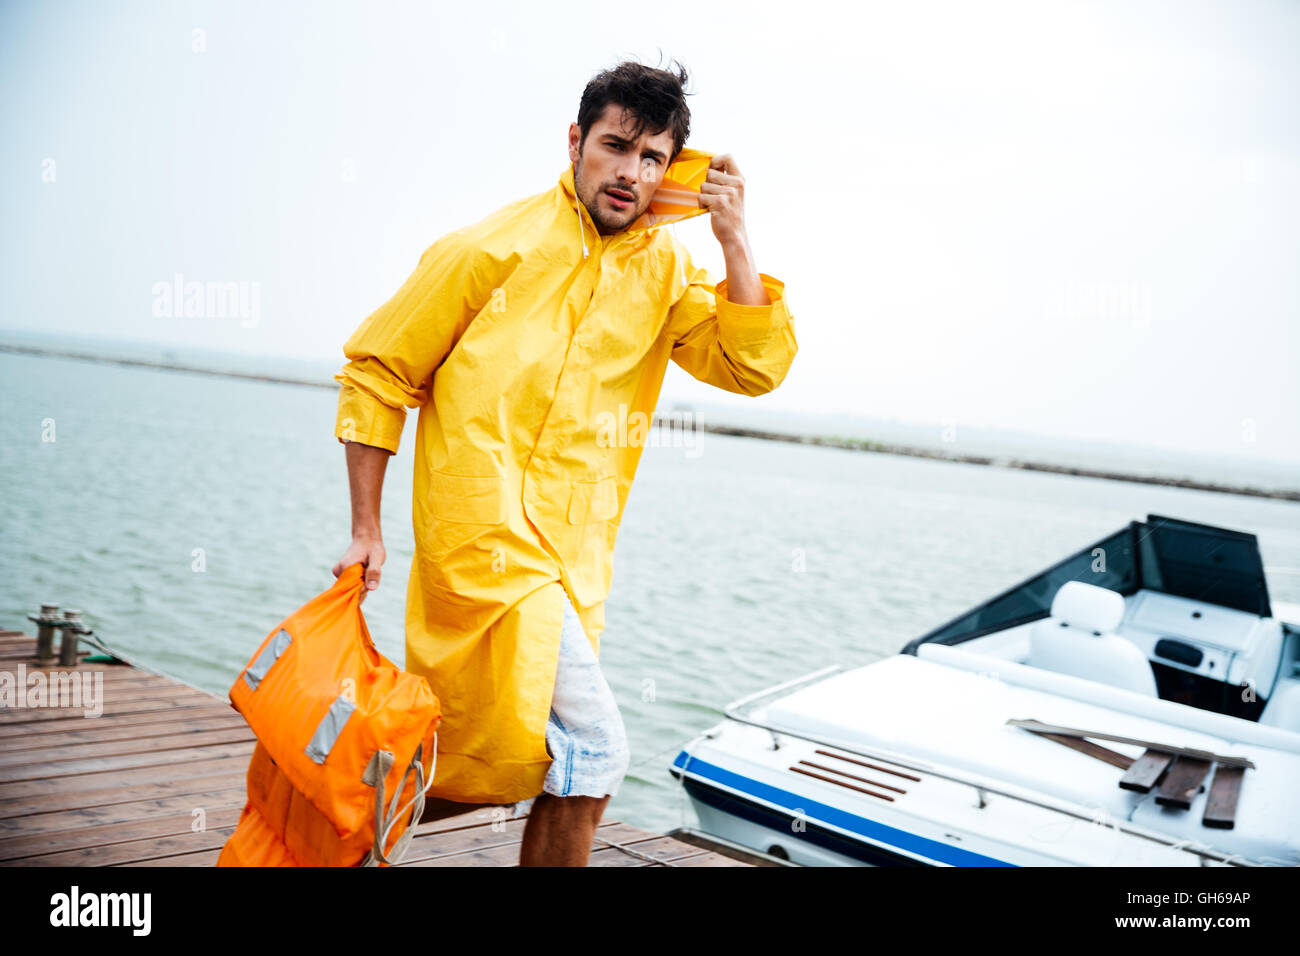 Junge hübsche Seemann Mann in gelben Mantel zu Fuß am Meer Pier holding  Schwimmweste Stockfotografie - Alamy